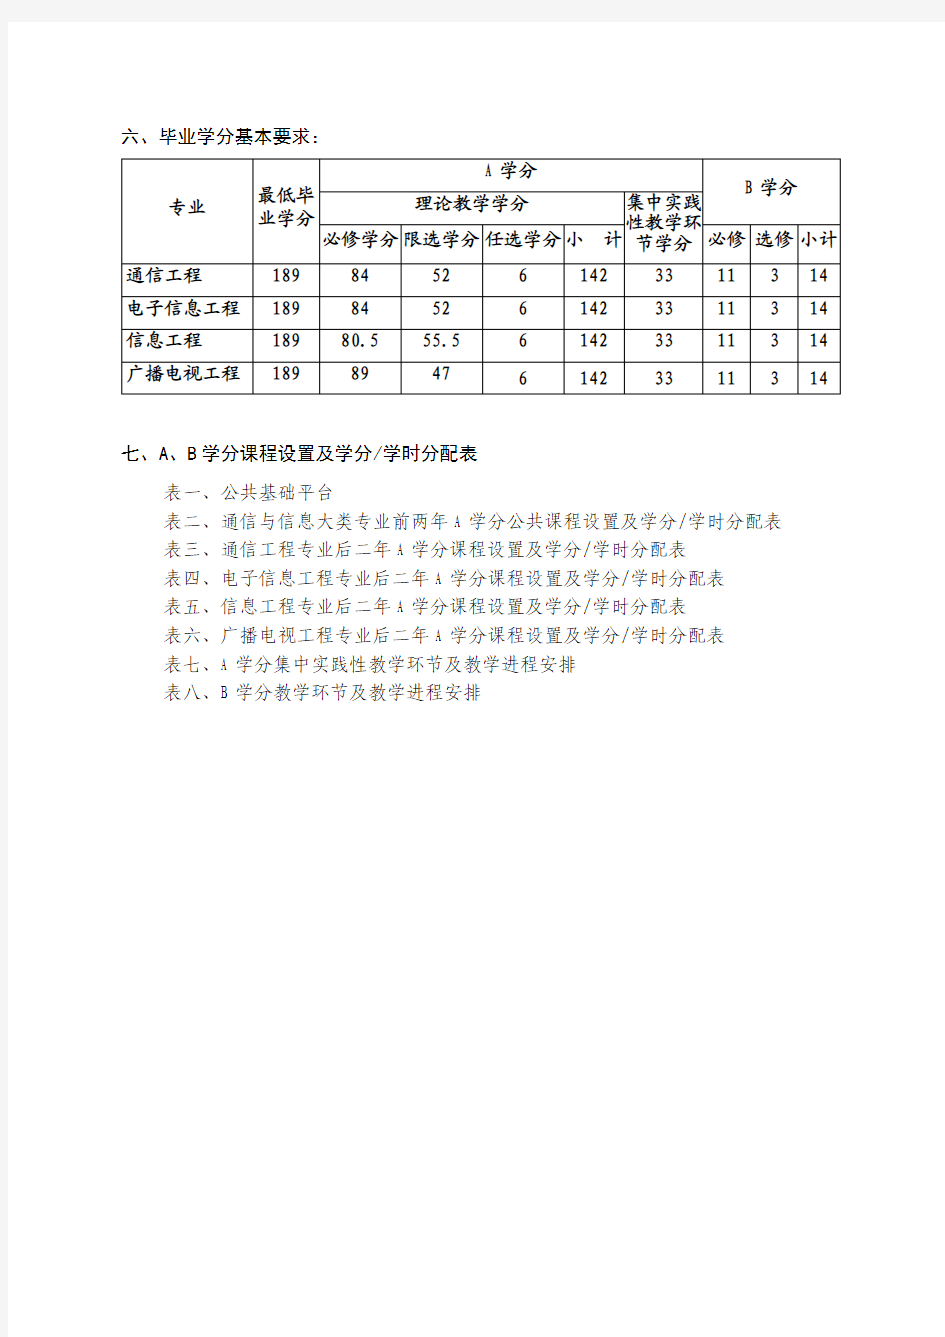 重庆邮电大学通信学院2011级本科培养方案0906